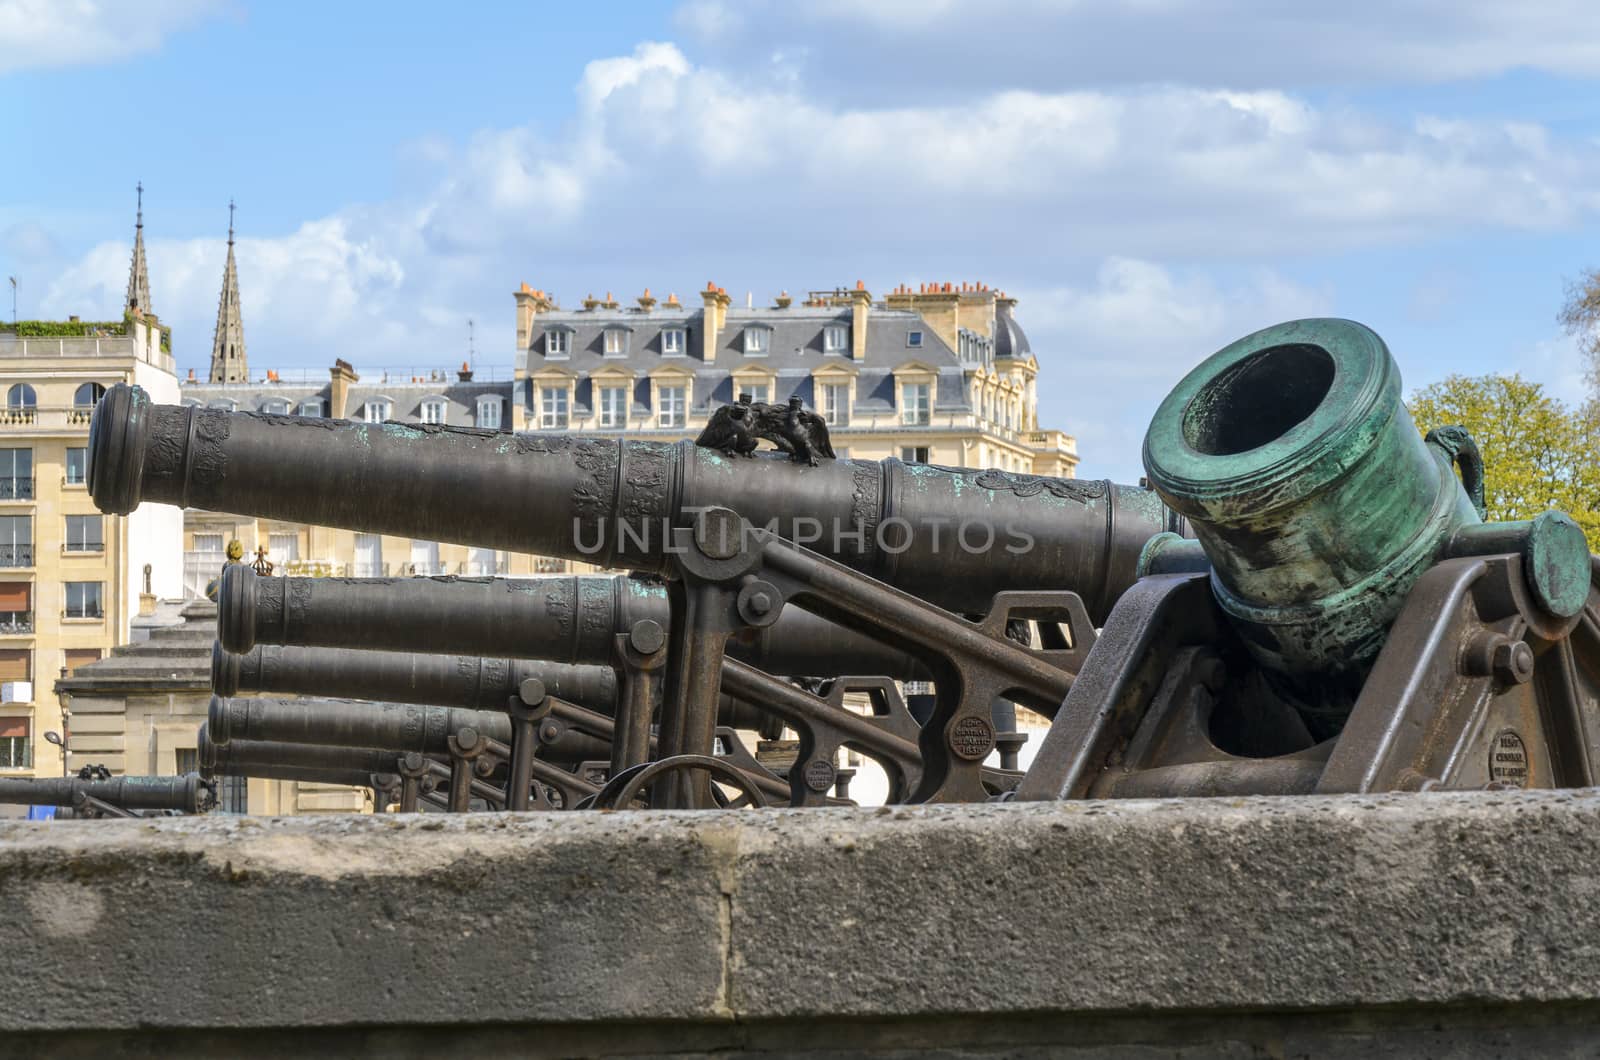 Paris, France - April 18, 2013: Artillery cannons at Les Invalides